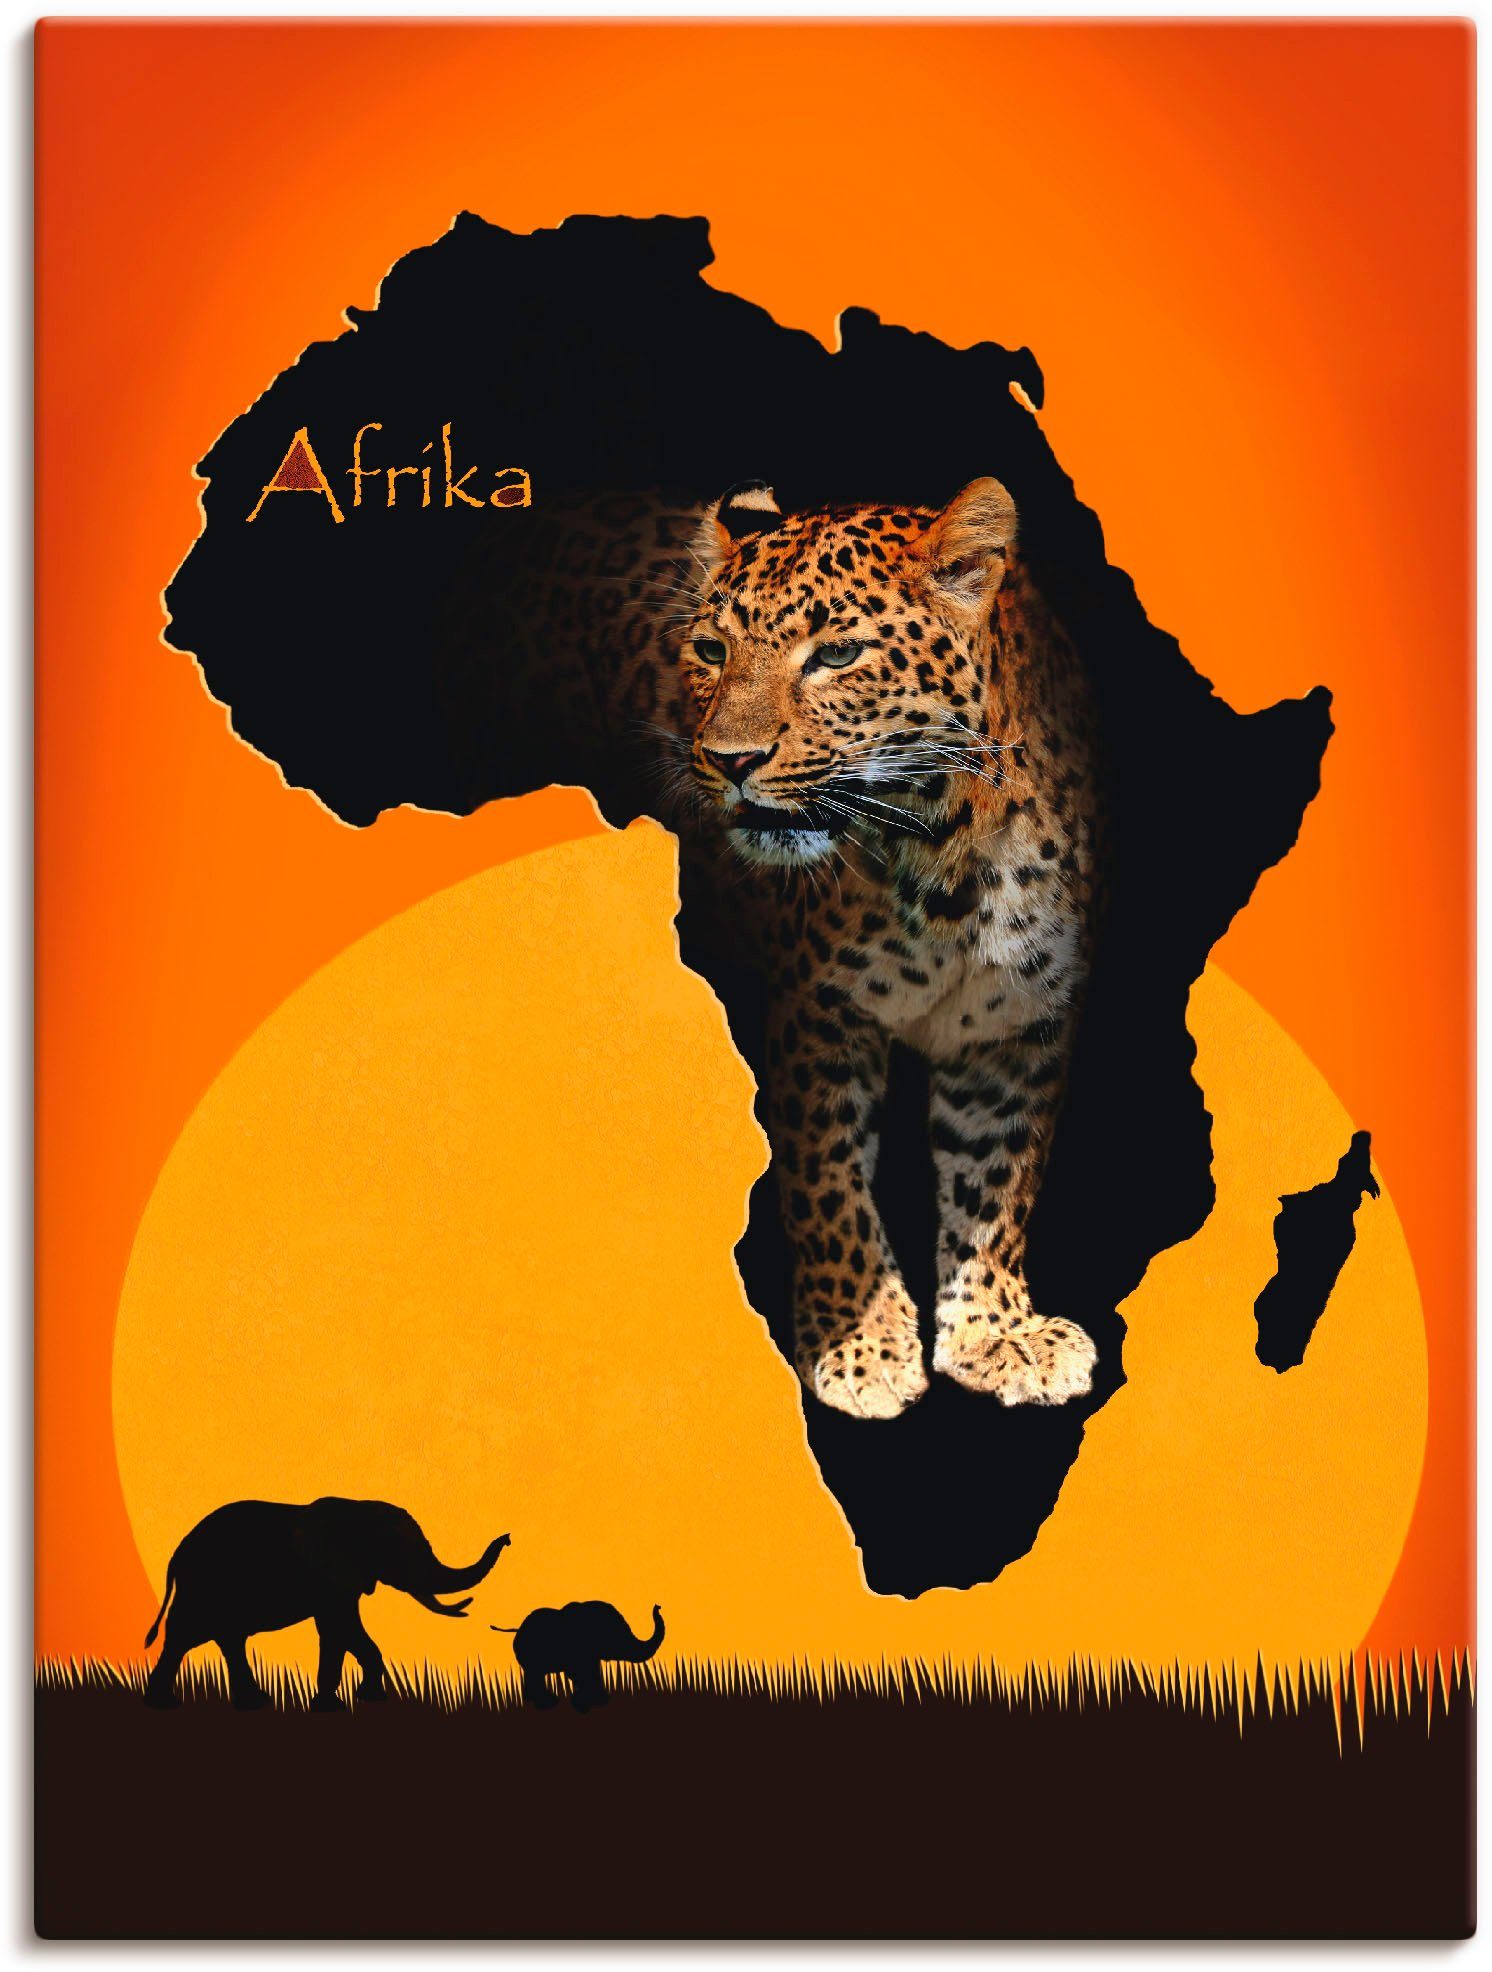 Artland Artprint Afrika het zwarte continent in vele afmetingen & productsoorten -artprint op linnen, poster, muursticker / wandfolie ook geschikt voor de badkamer (1 stuk)